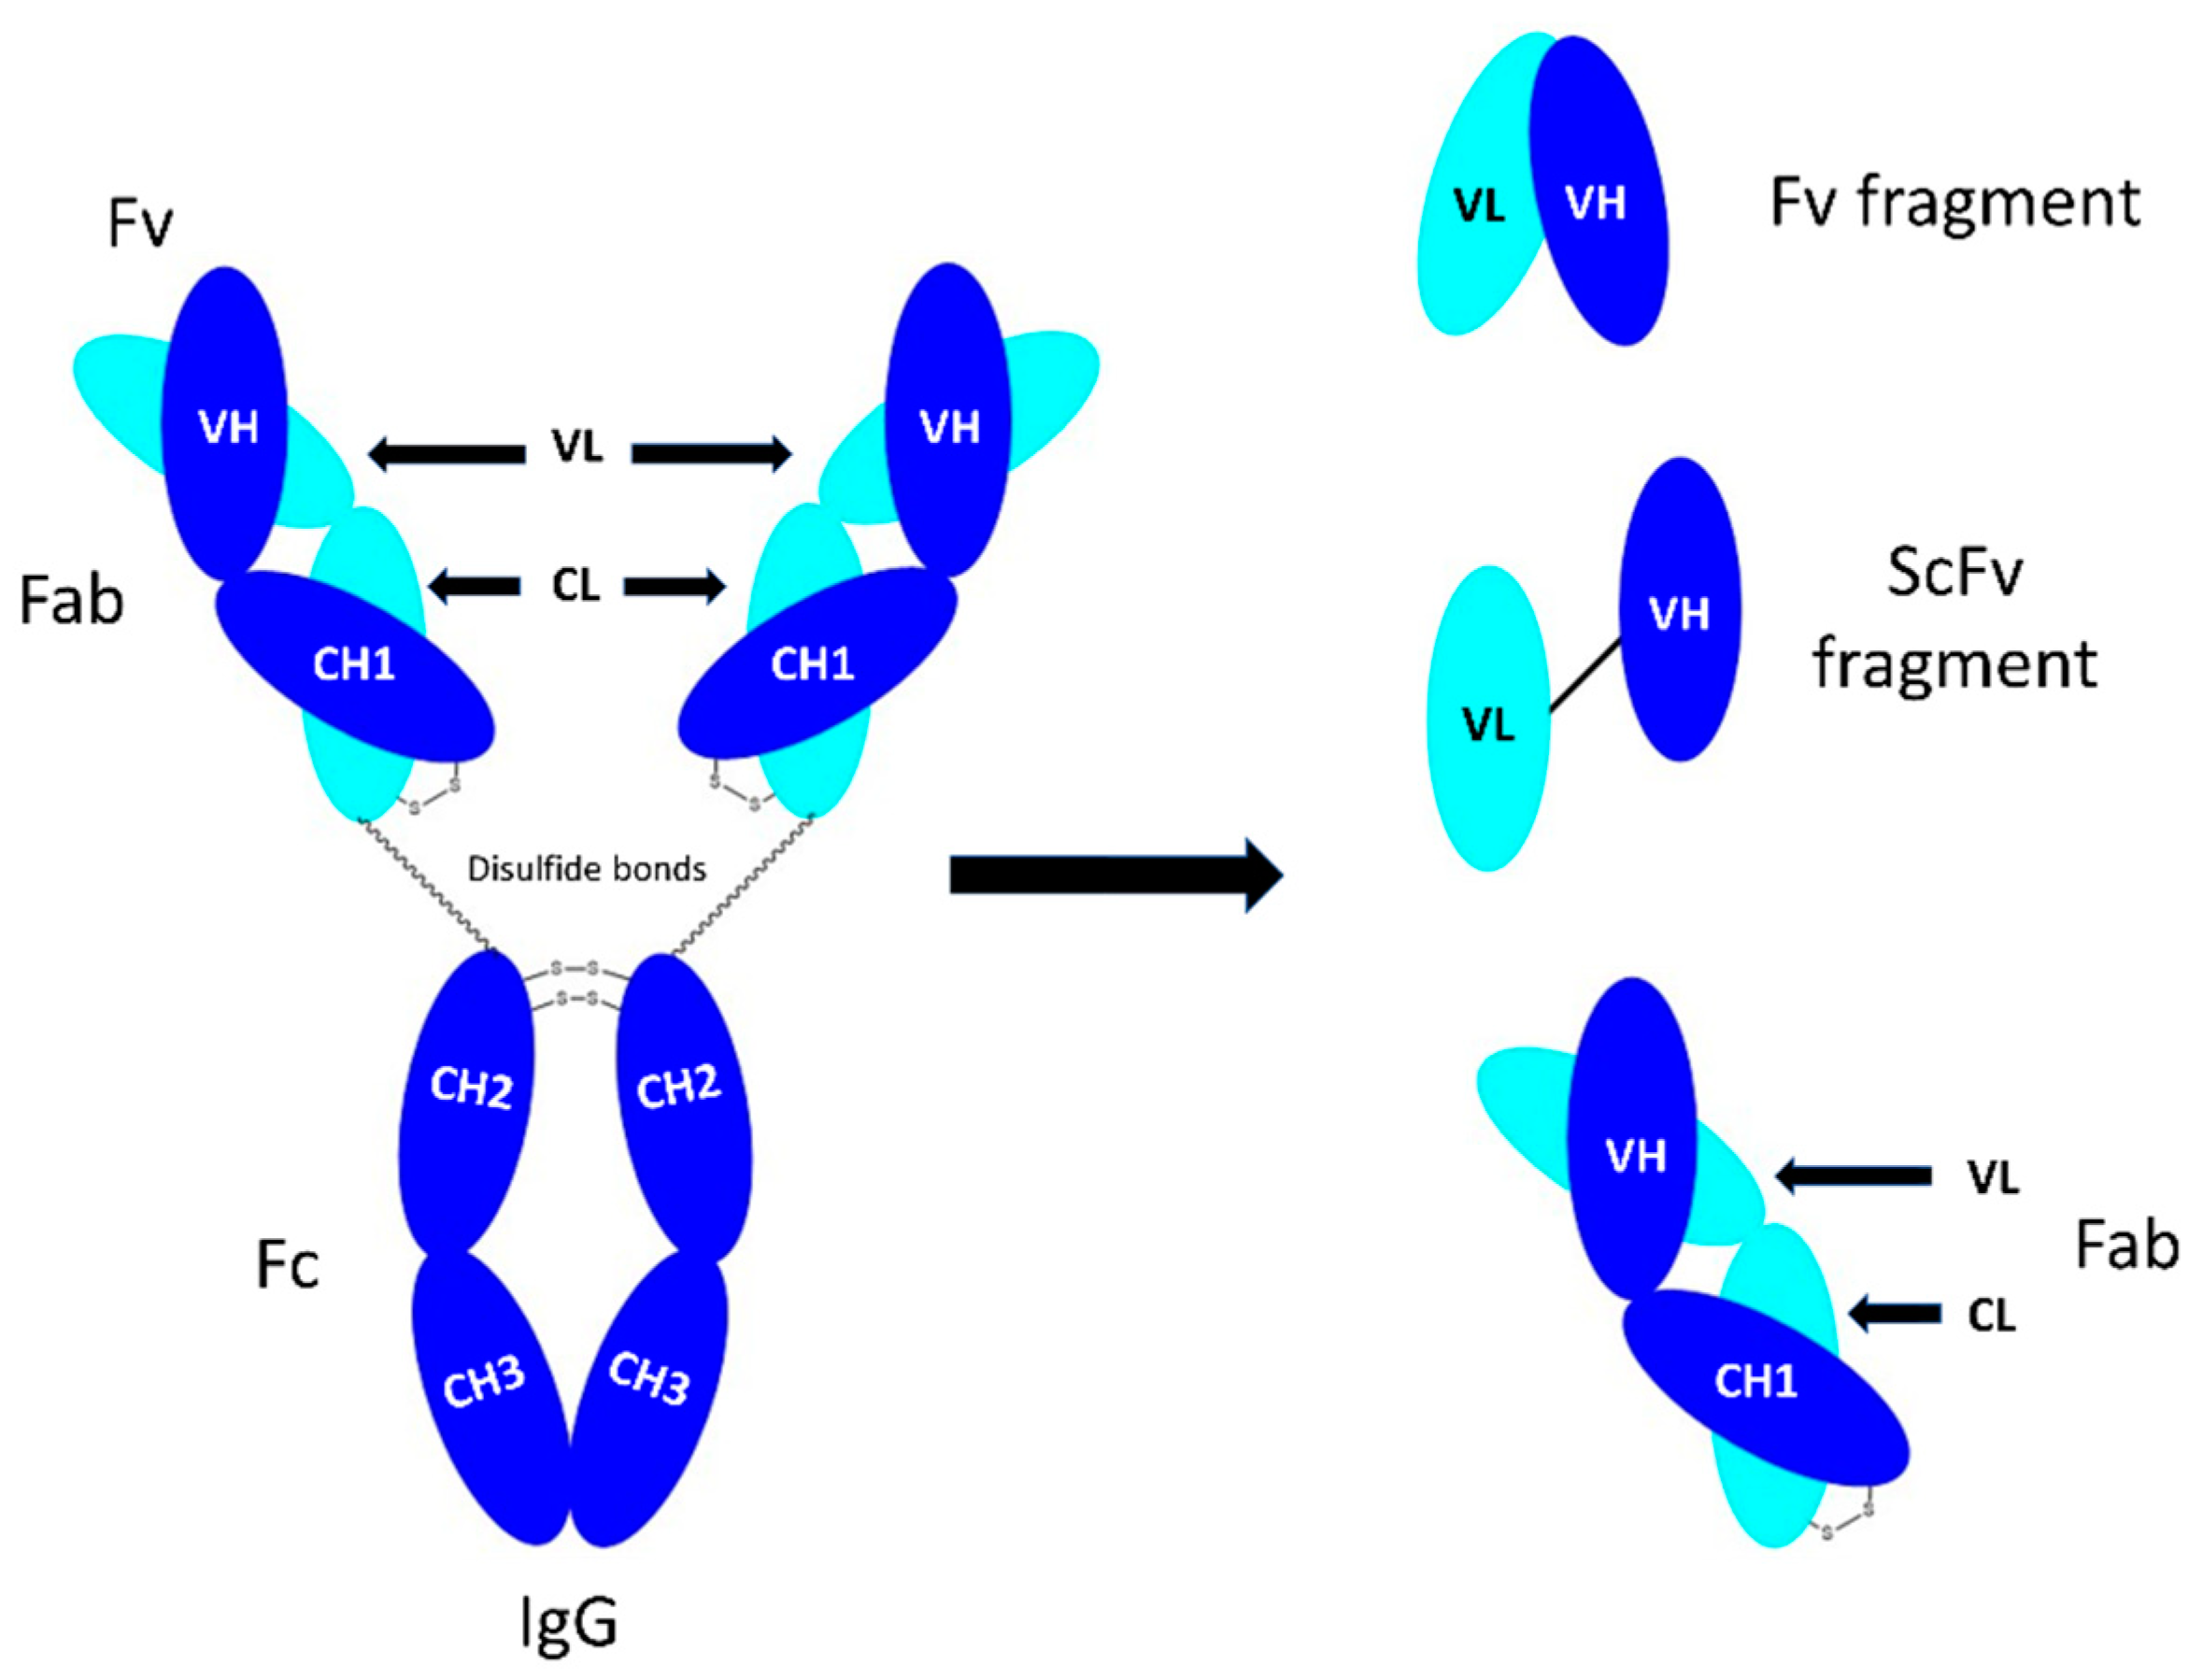 IgG binding assays using a purified IgG and b human serum. F, feed